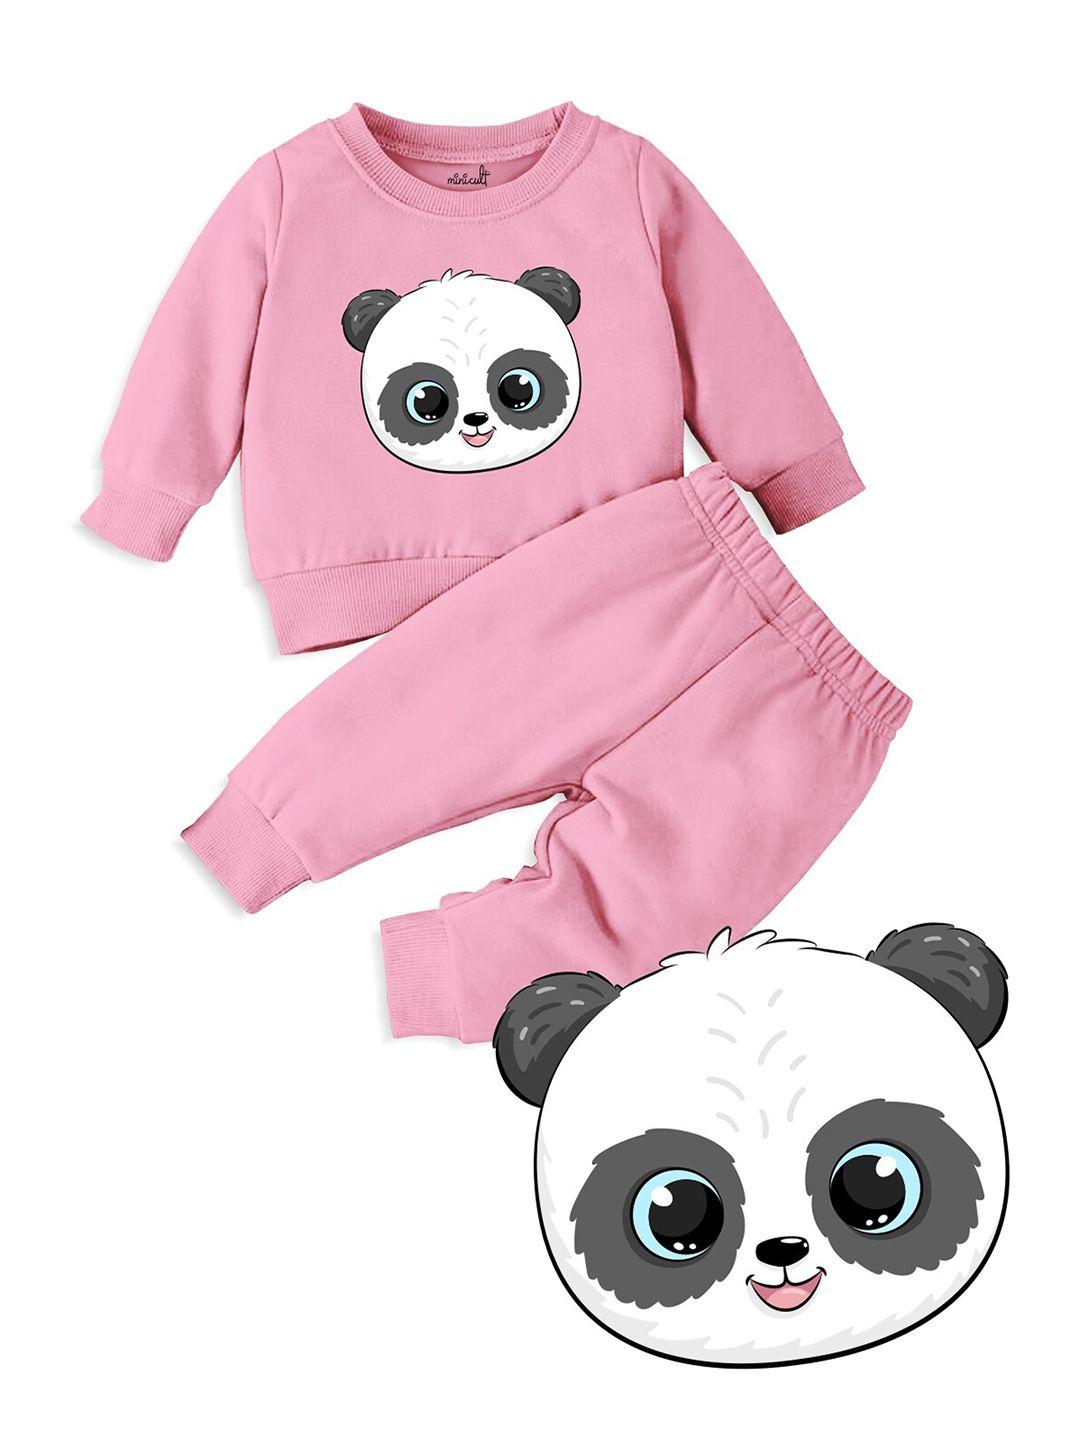 minicult kids panda printed t-shirt with pyjamas